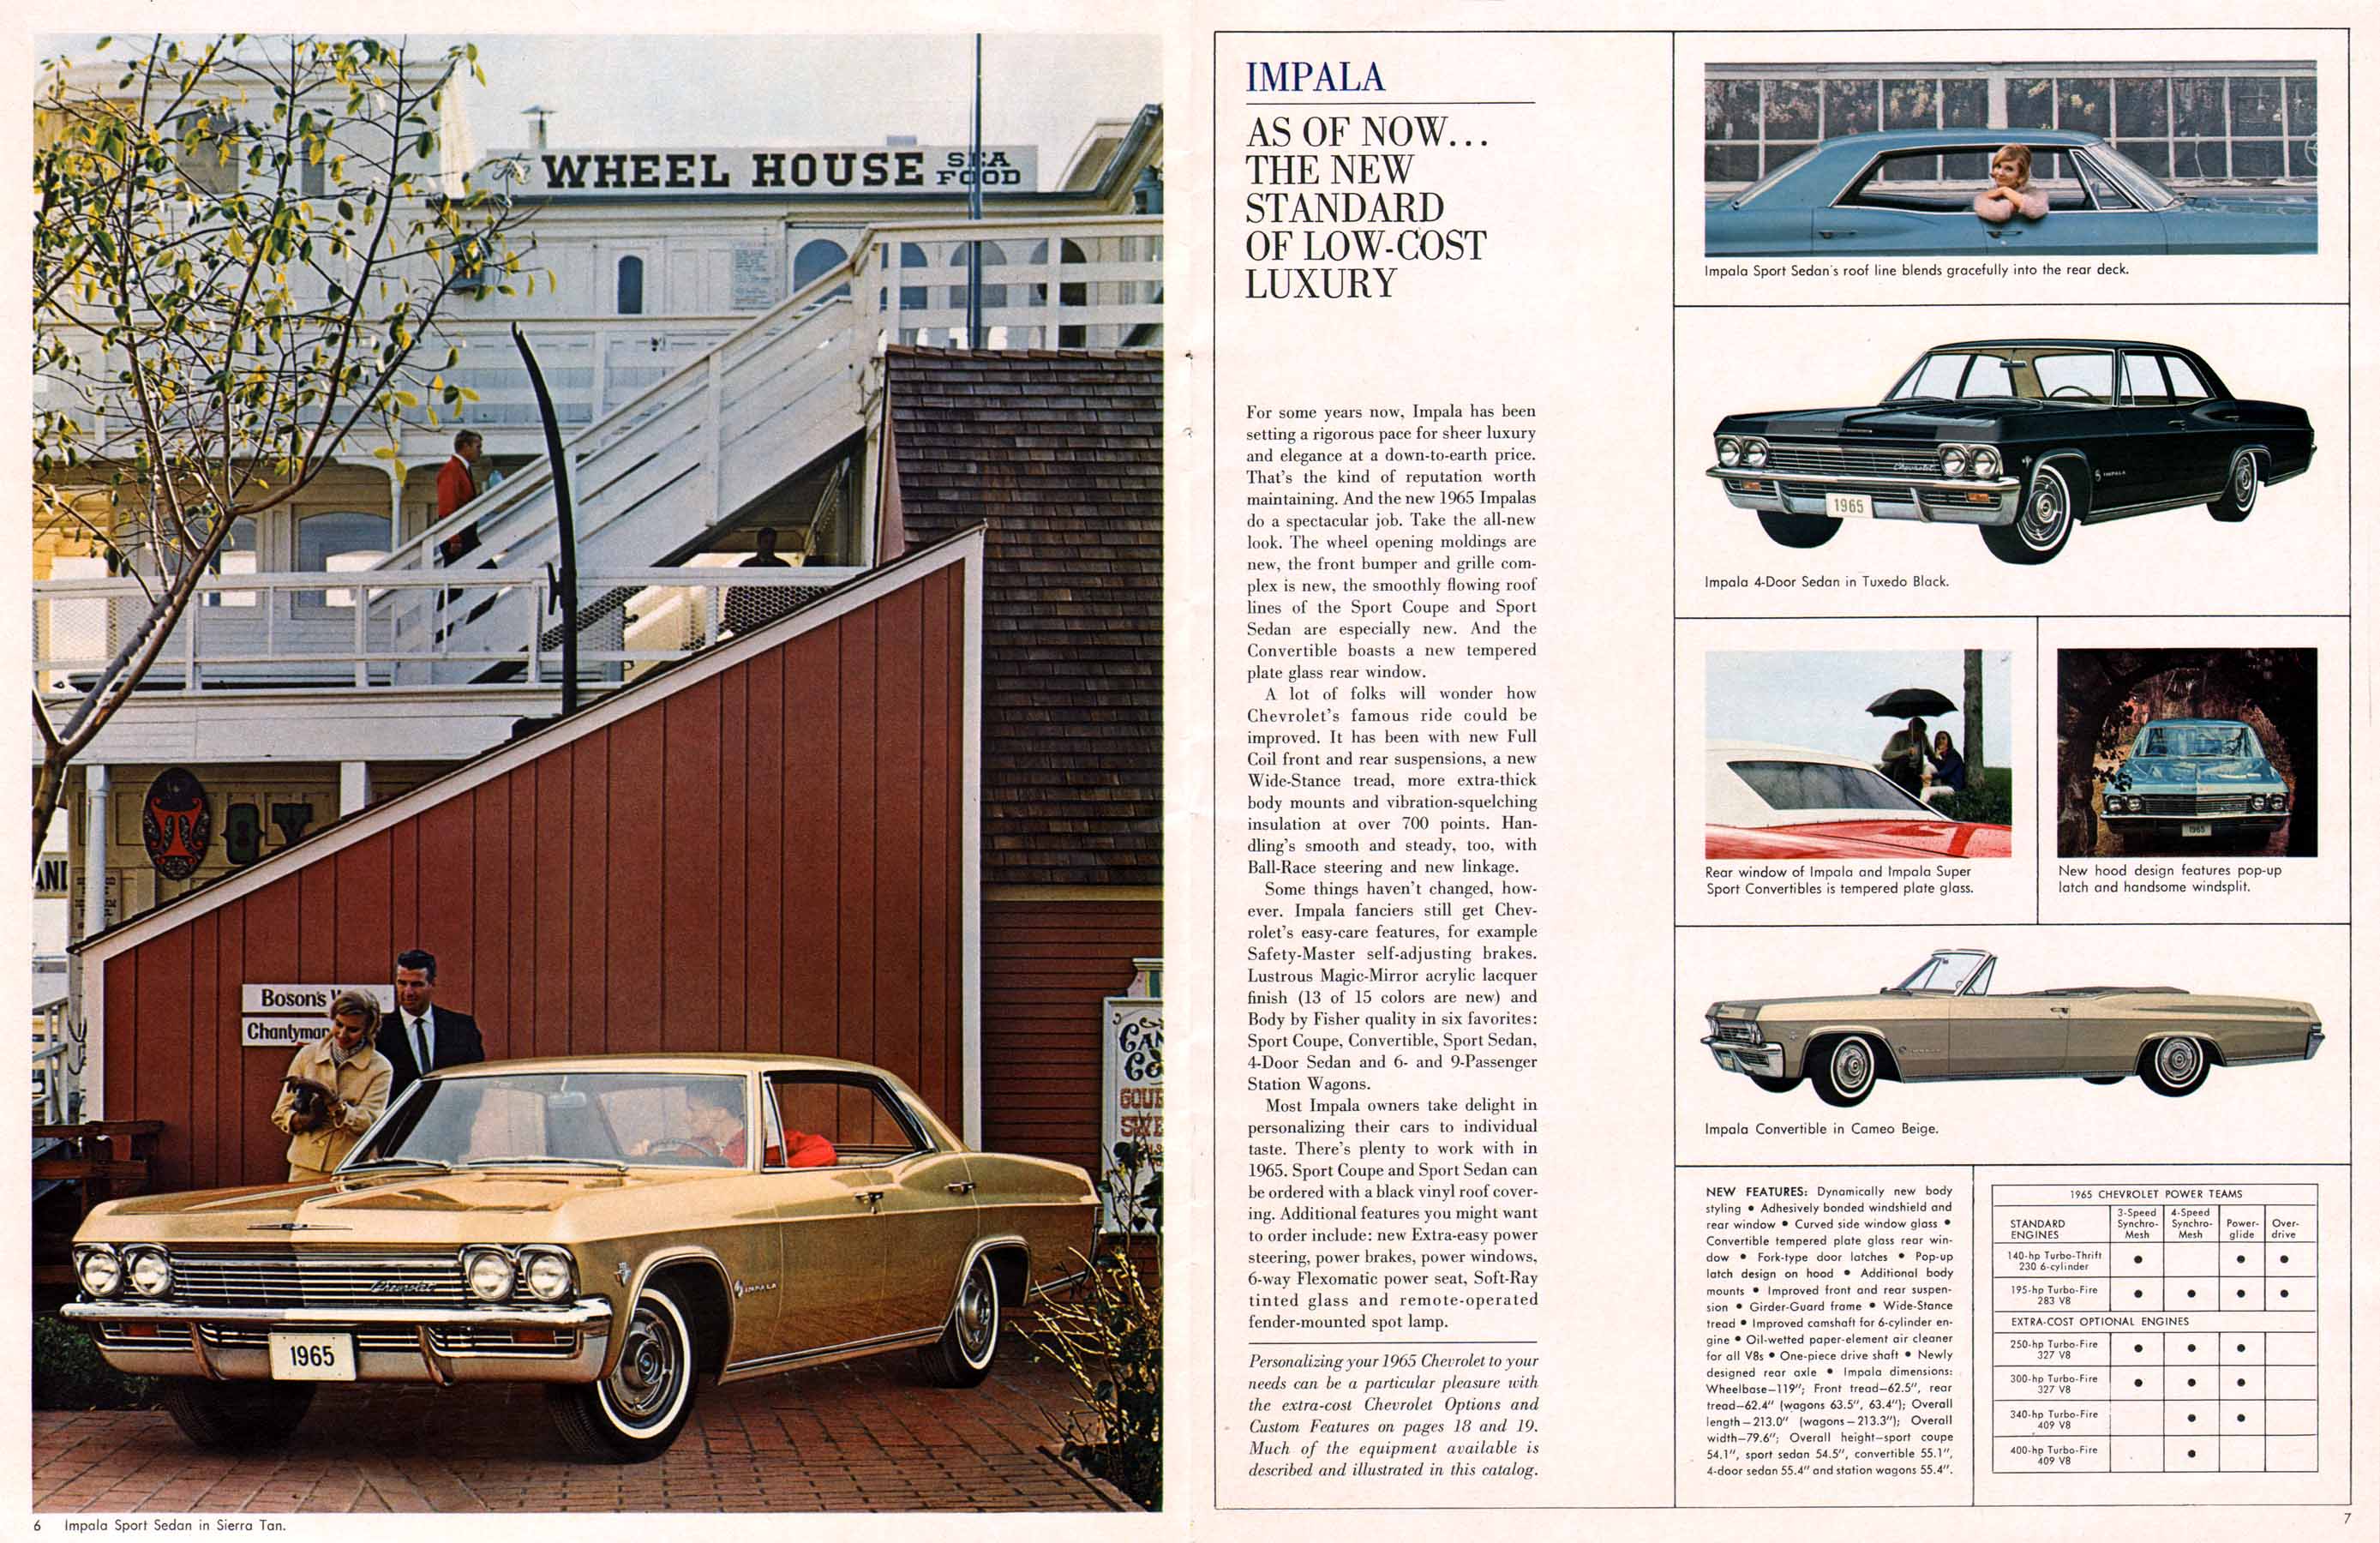 1965 Chevrolet Full Size-06-07